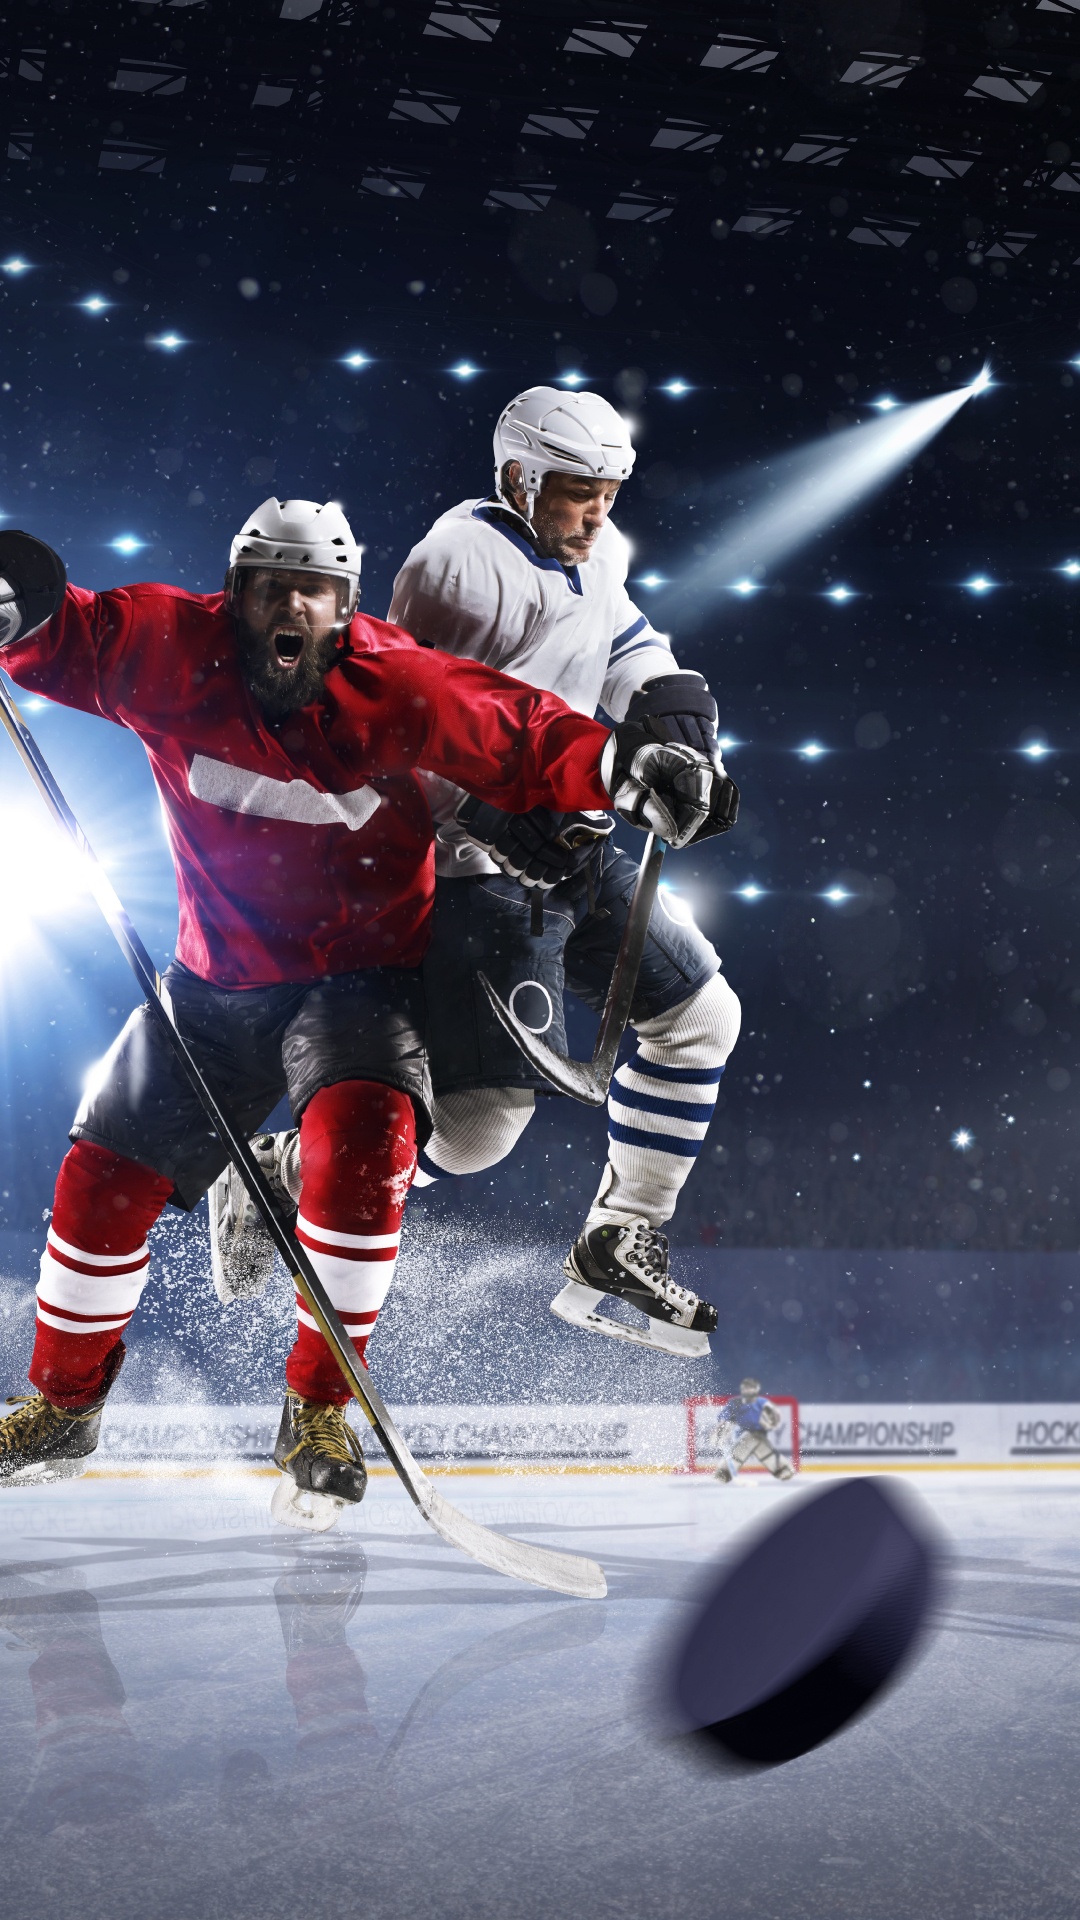 Eishockeyspieler Auf Dem Eishockeyfeld. Wallpaper in 1080x1920 Resolution